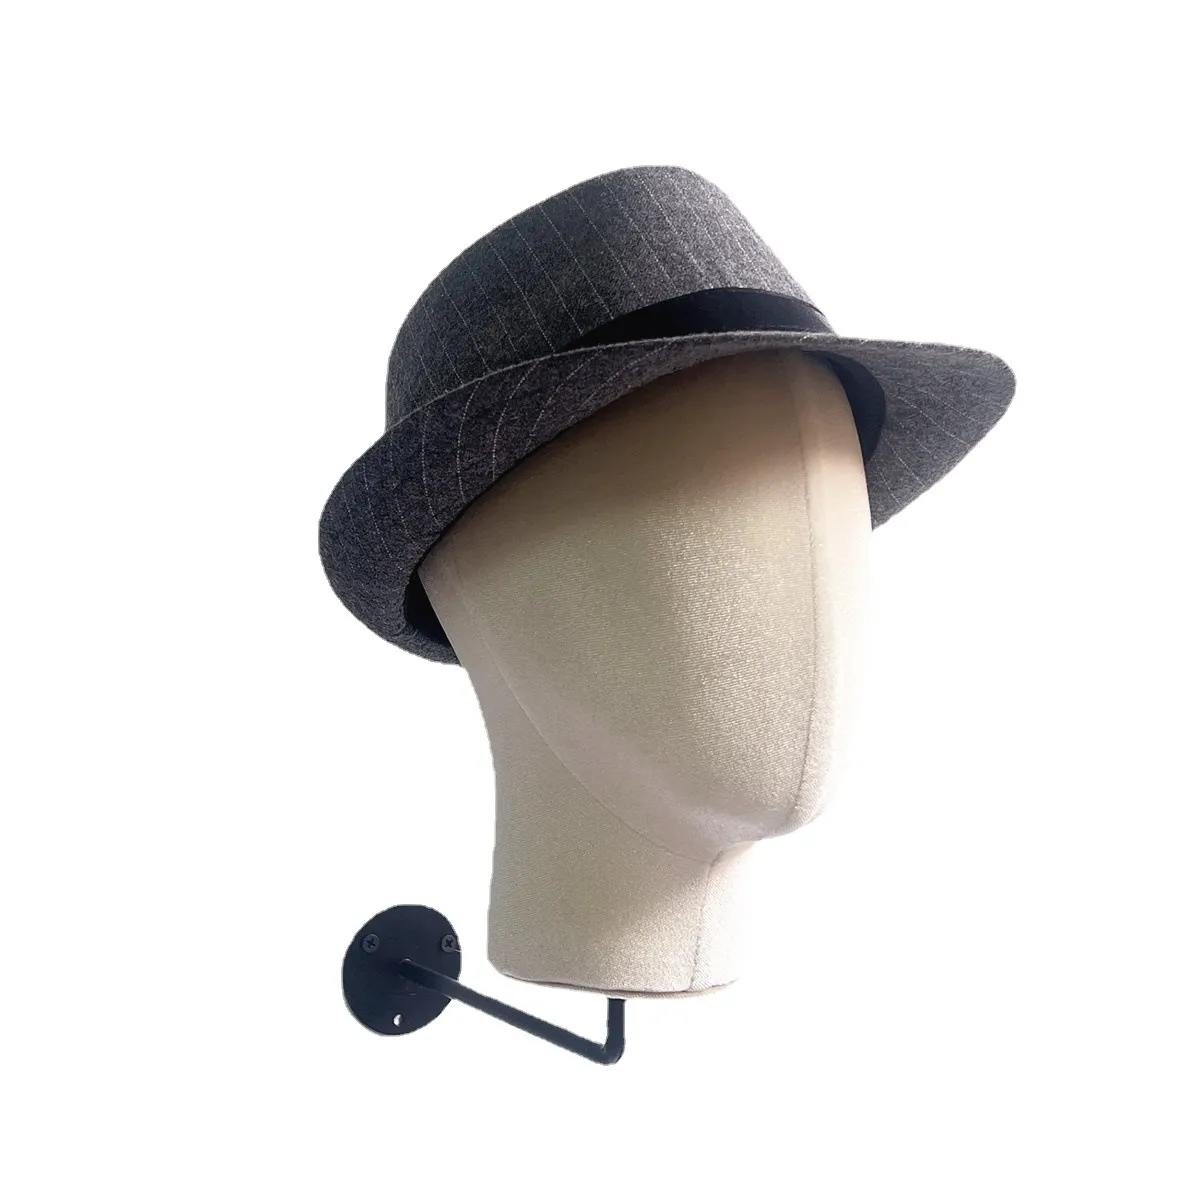 가발과 모자 디스플레이 용 1 피스 패브릭 커버 벽걸이 모델 마네킹 헤드